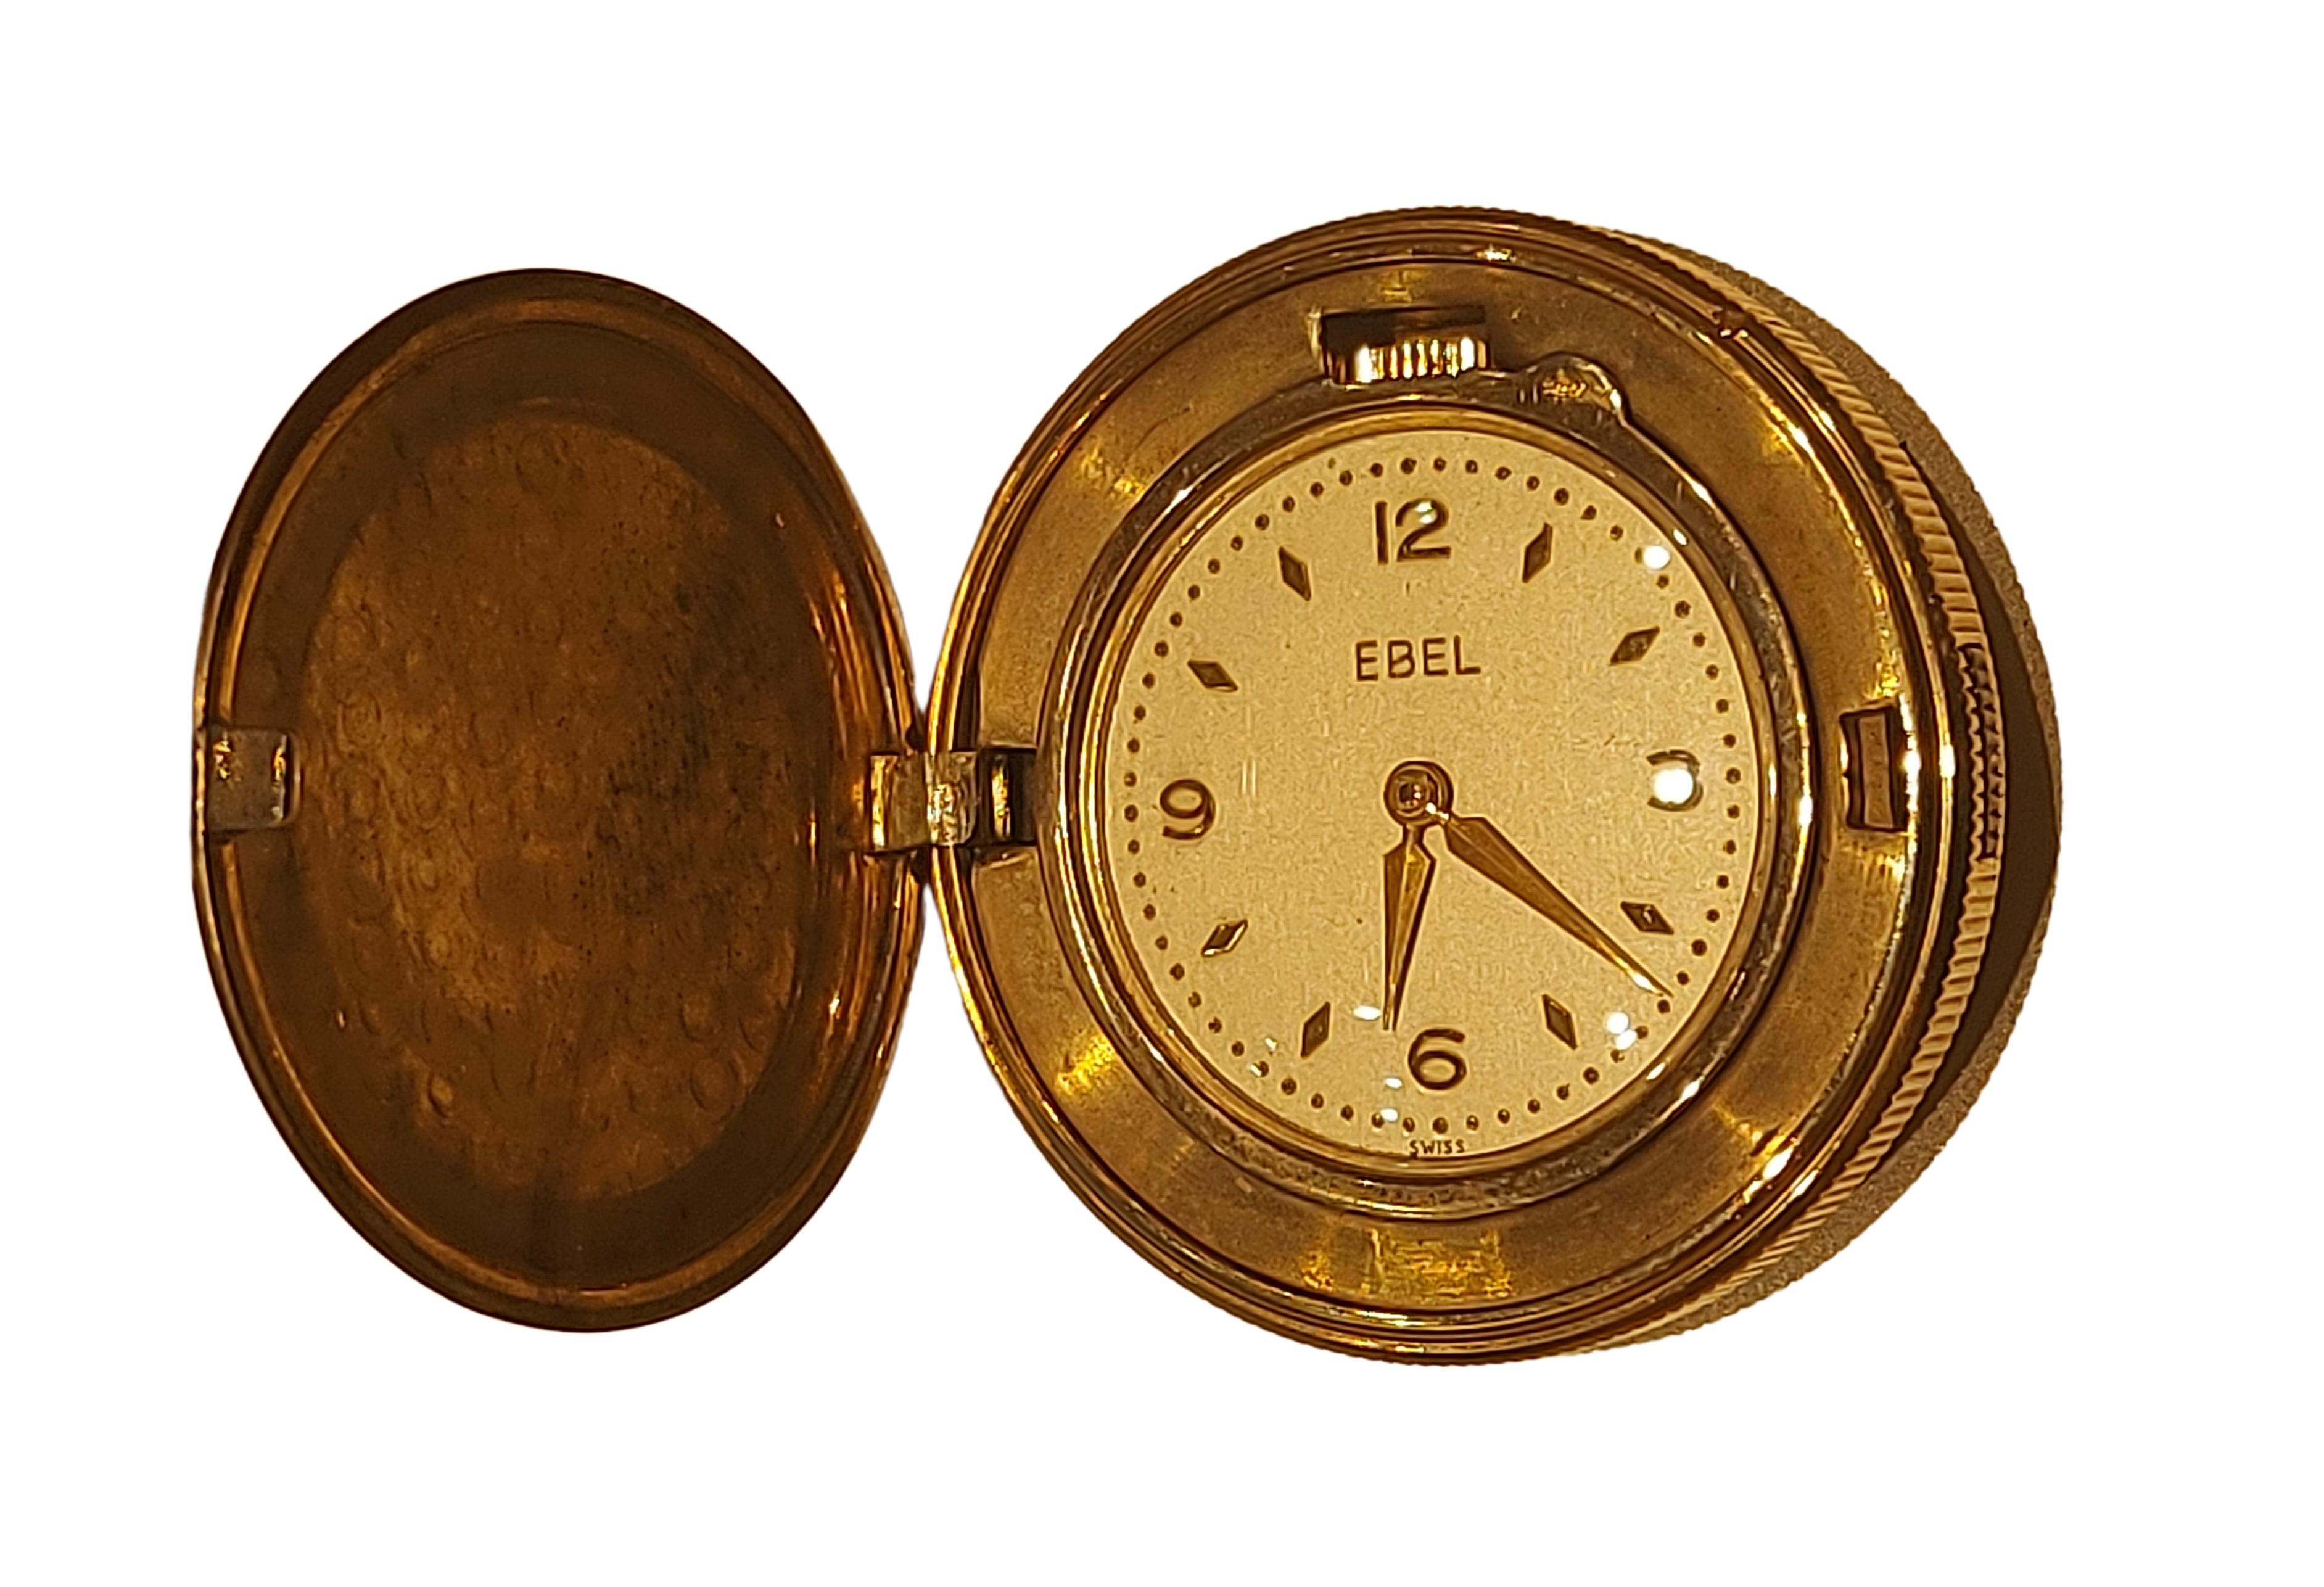 Rare montre de poche plaquée or Ebel Vintage 

MATERIAL : Plaqué or

Boîtier : Diamètre 36,4 mm x épaisseur 9,5 mm, plaqué or

Cadran : cadran doré avec index et chiffres arabes en or. Diamètre du cadran 26,6 x épaisseur 6,4 mm

Poids total : 42,7